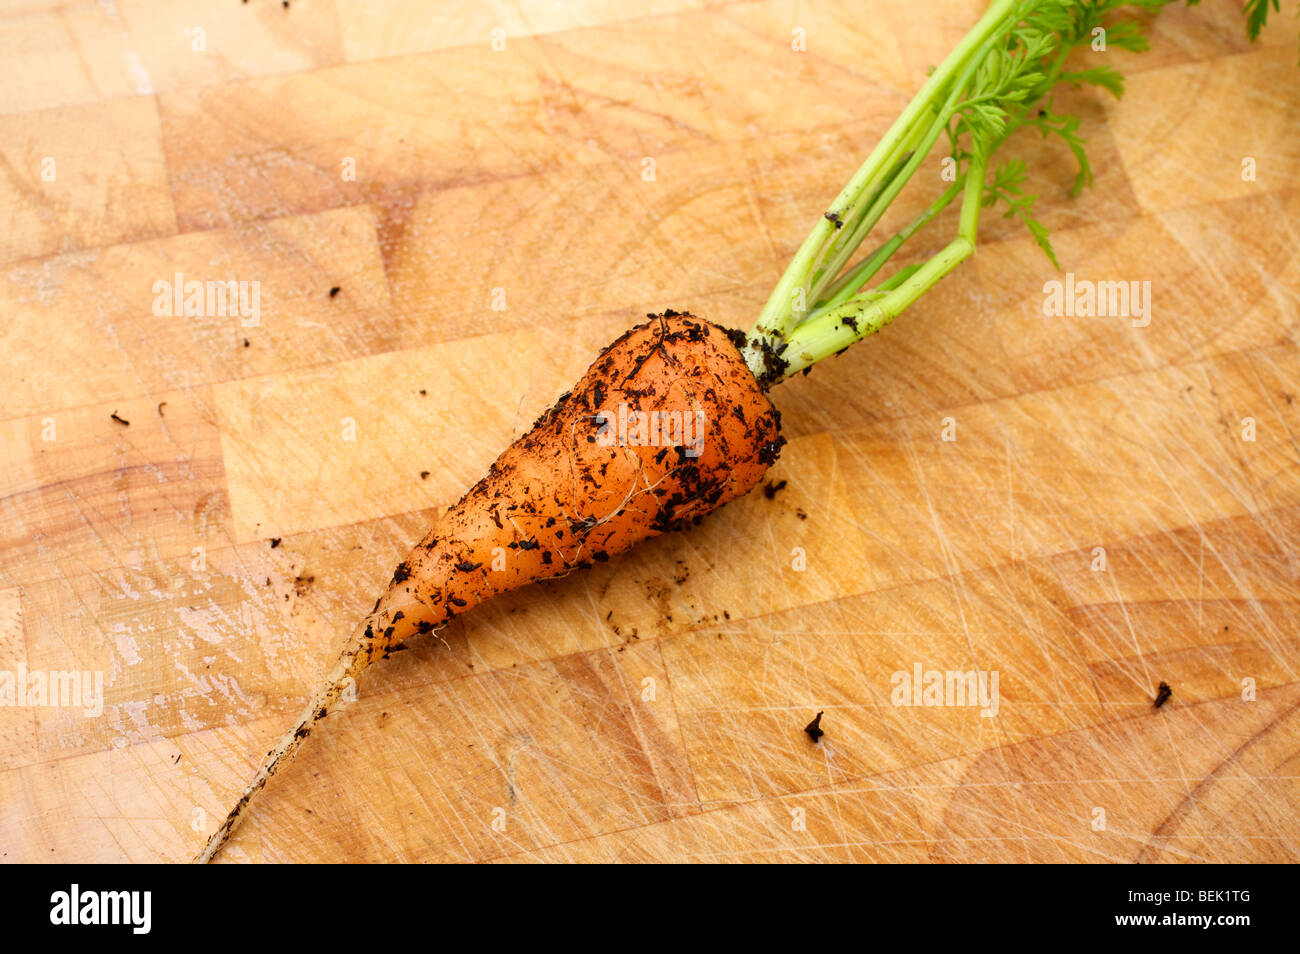 Solo zanahoria fresca recién sacados del jardín con suelo de bambú en un bloque de picado Foto de stock